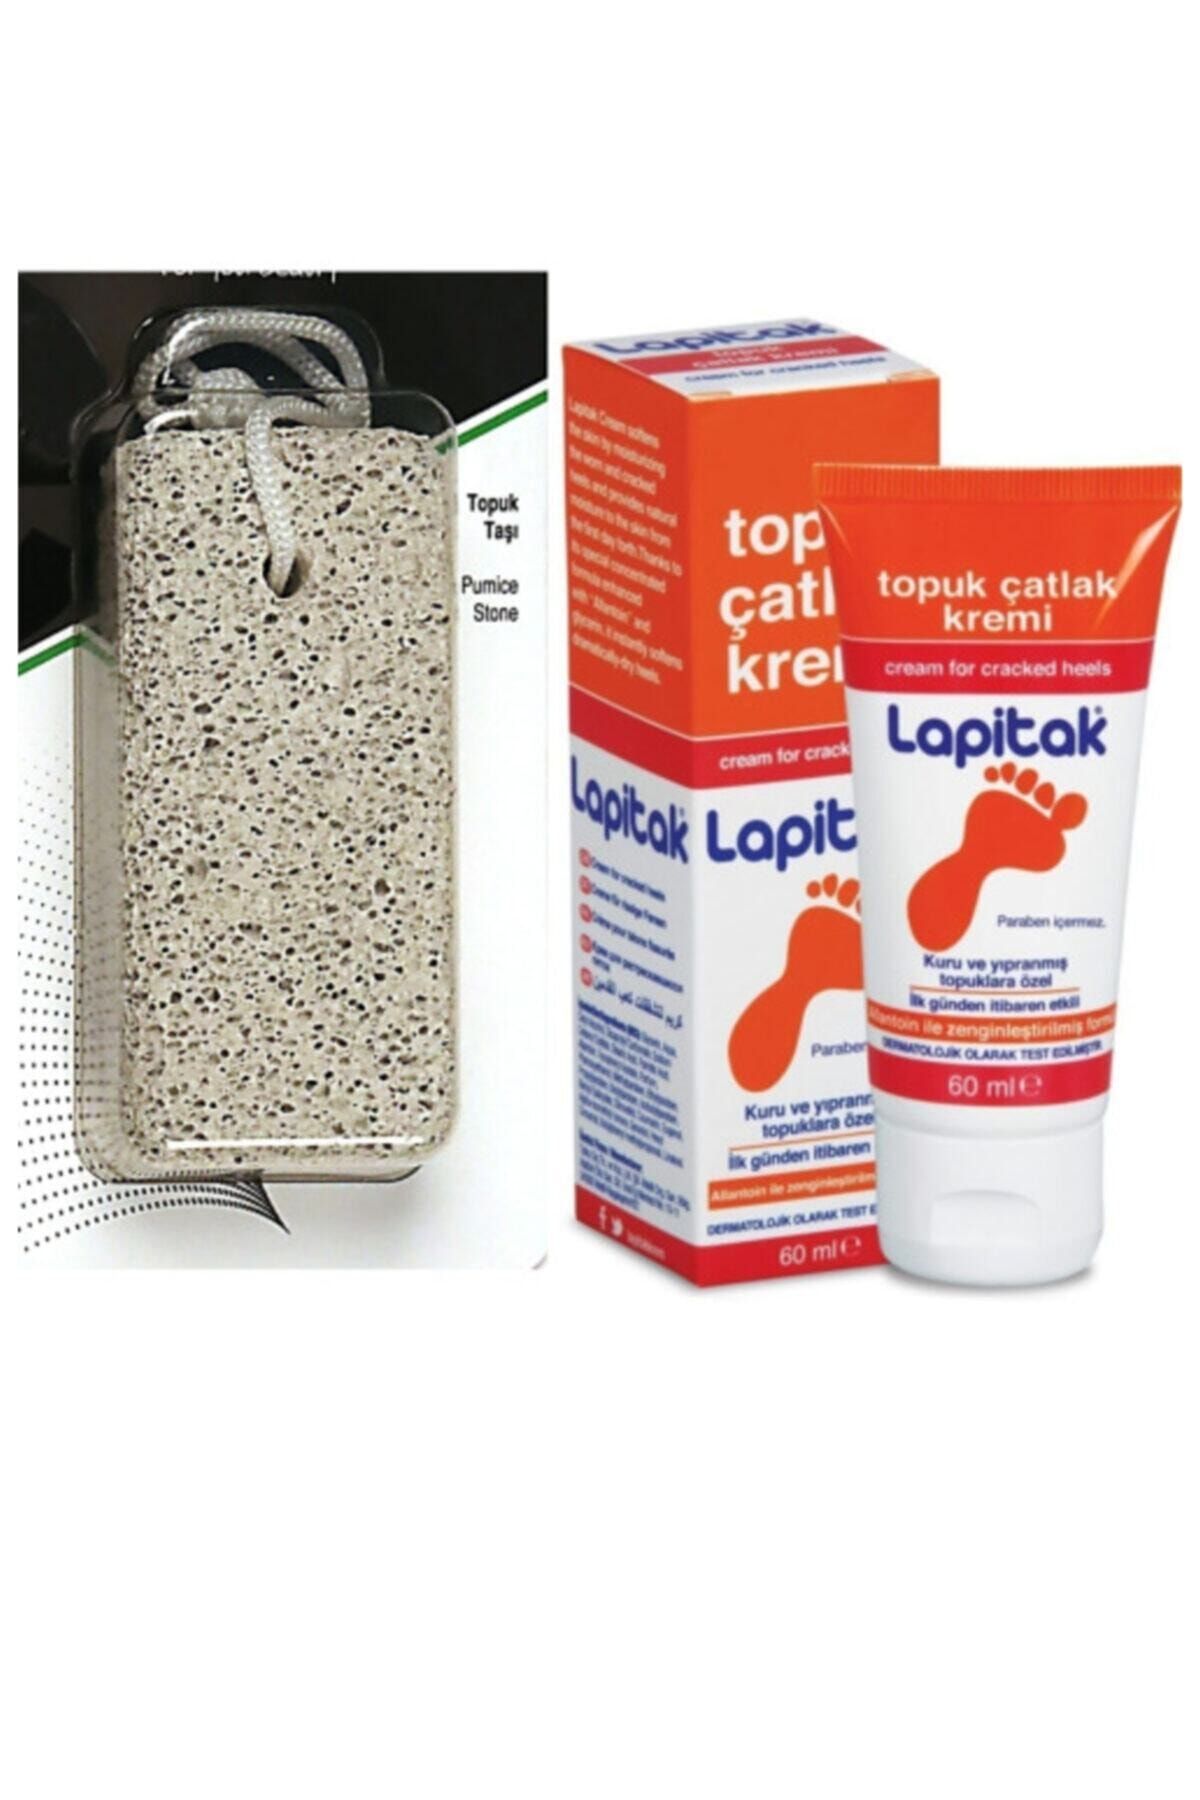 Yazpera Lapitak Topuk Çatlak Ve Bakım Kremi + Ponza Topuk Nasır Temizleme Taşı